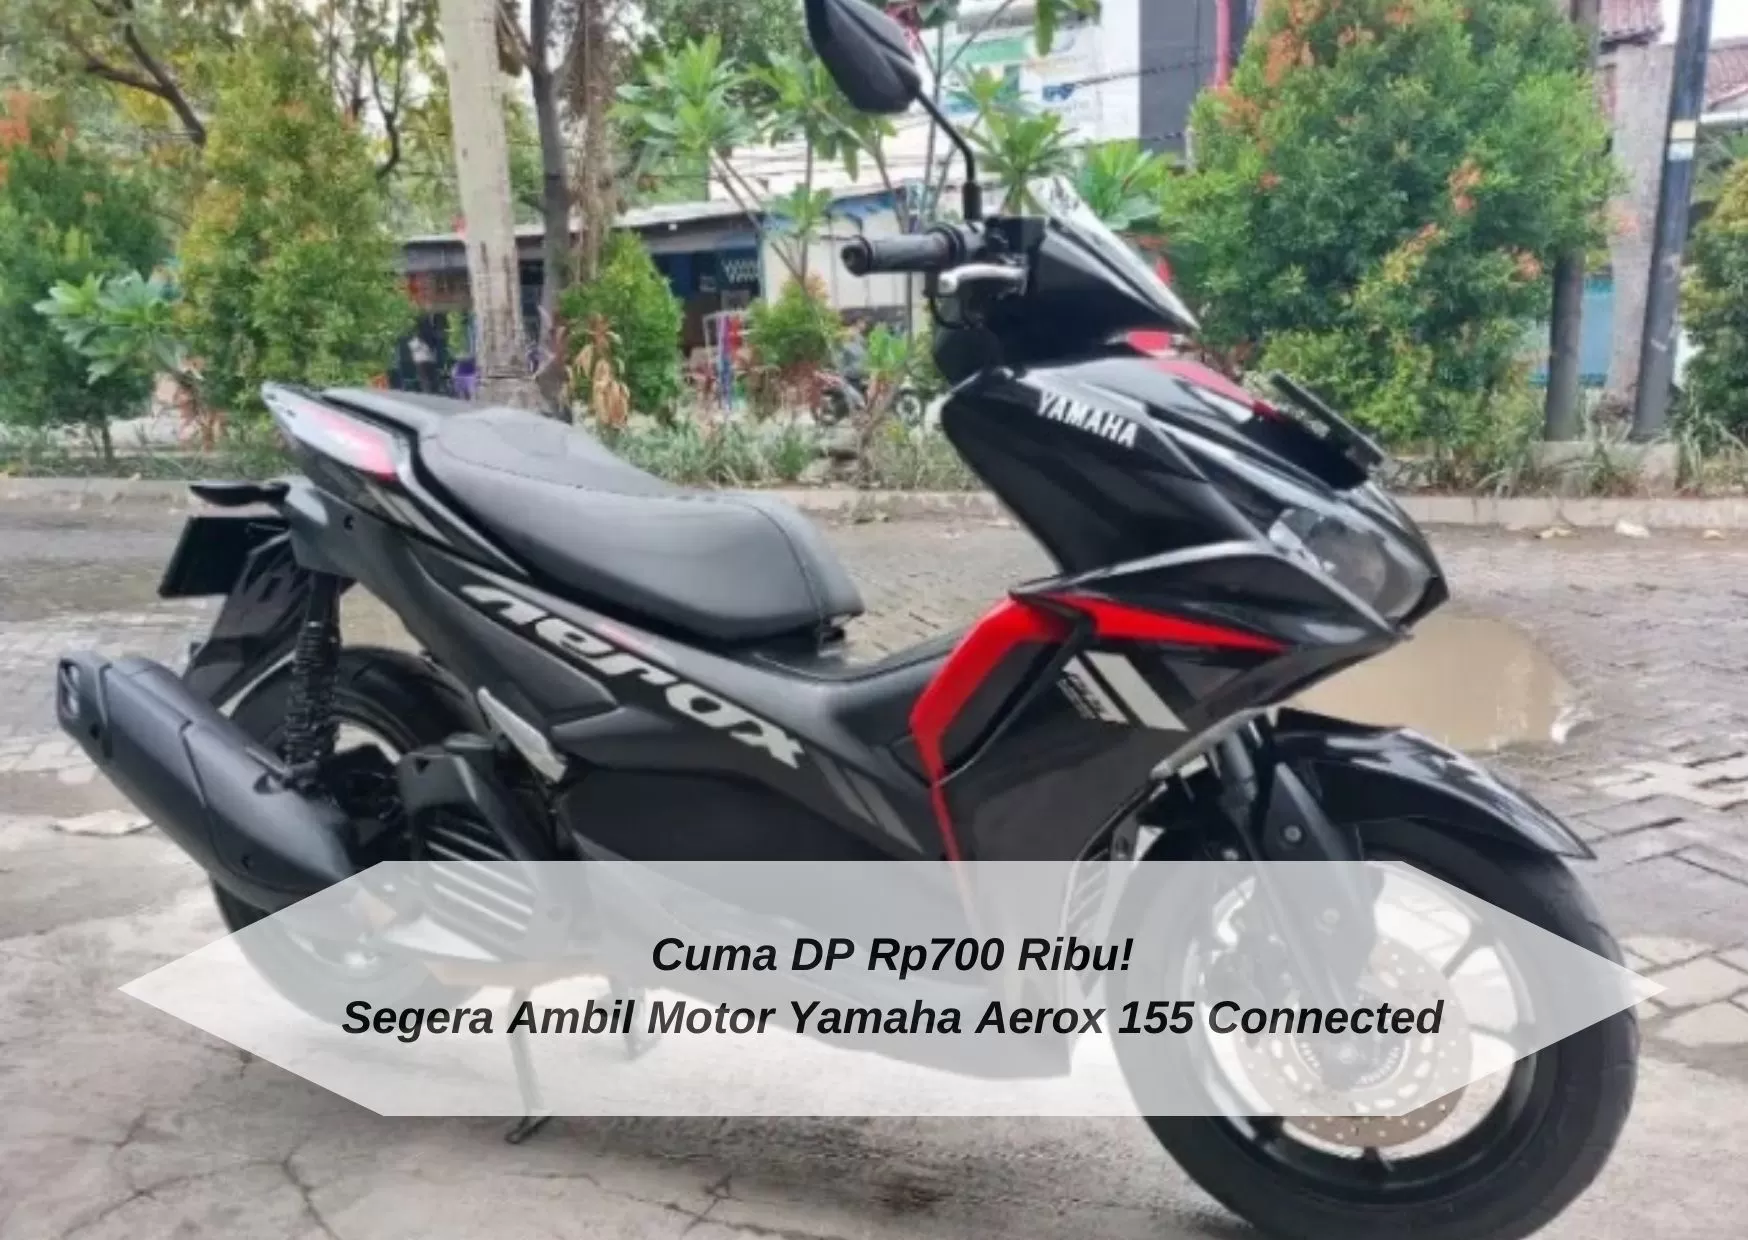 Cuma DP Rp700 Ribu! Ambil Kredit Motor Yamaha Aerox 155 Connected 2021 di Kota Tangerang Selatan